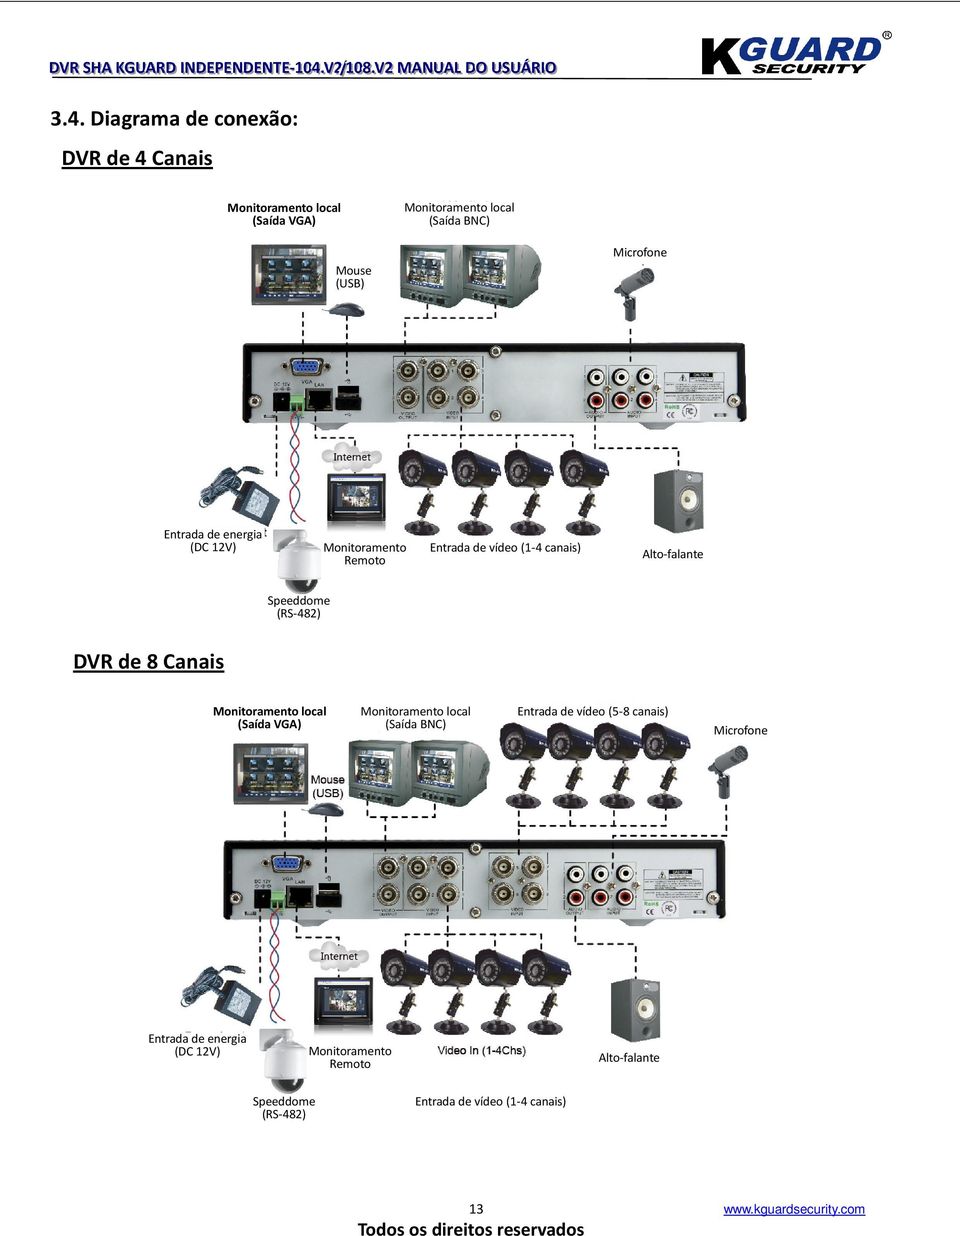 DVR de 8 Canais Monitoramento local (Saída VGA) Monitoramento local (Saída BNC) Entrada de vídeo (5-8 canais) Microfone